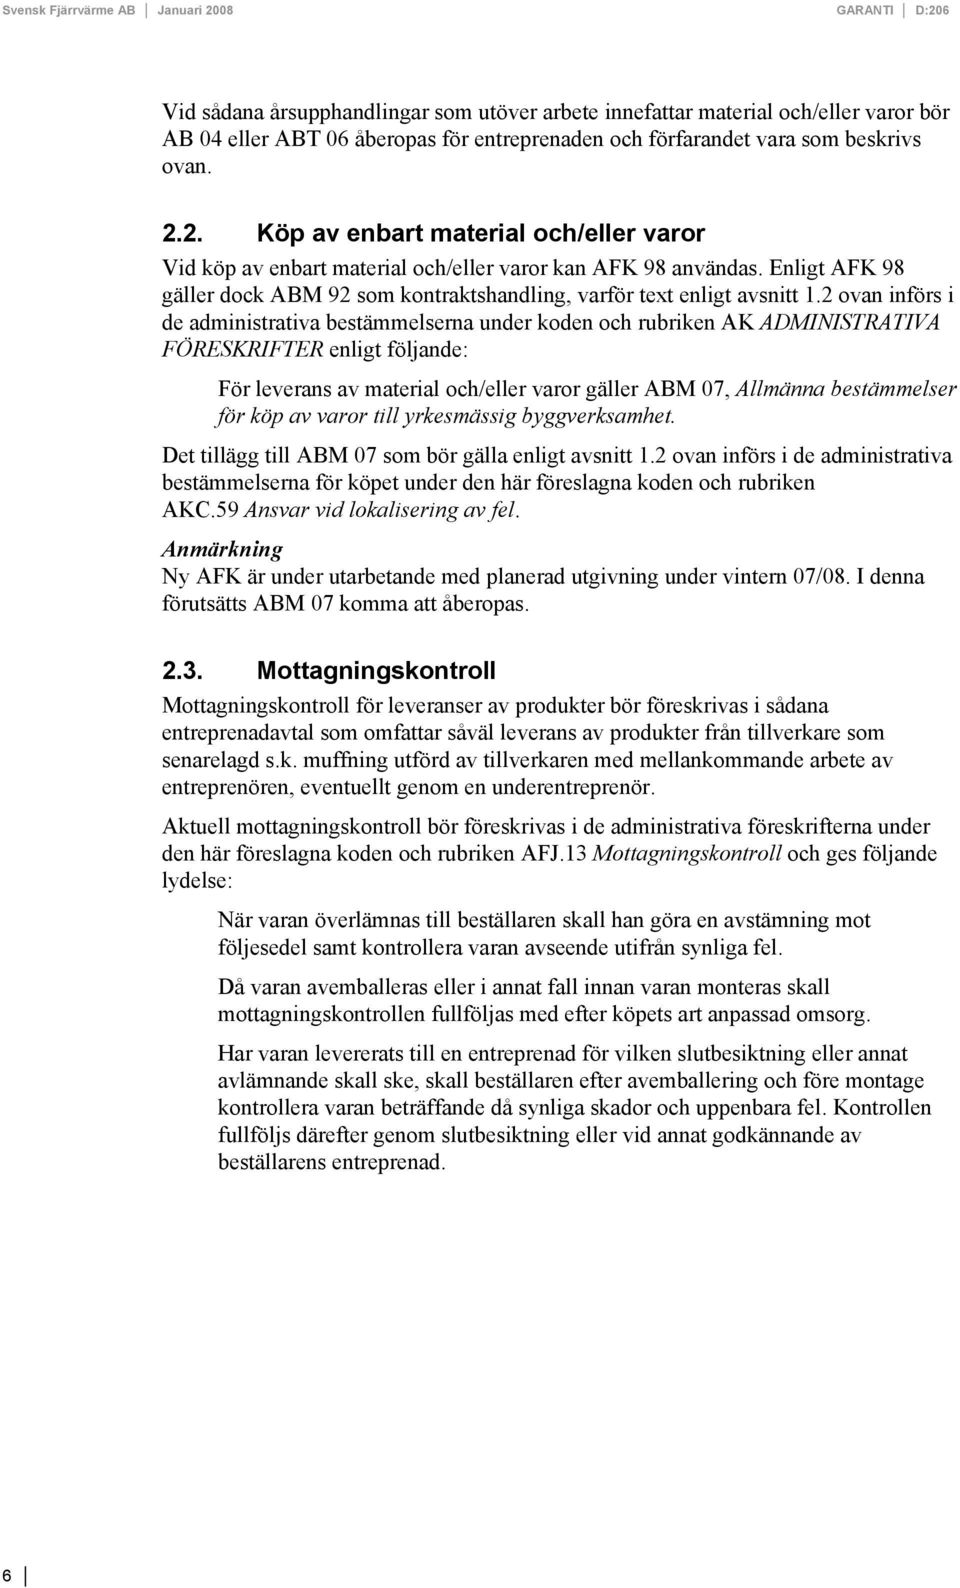 Enligt AFK 98 gäller dock ABM 92 som kontraktshandling, varför text enligt avsnitt 1.